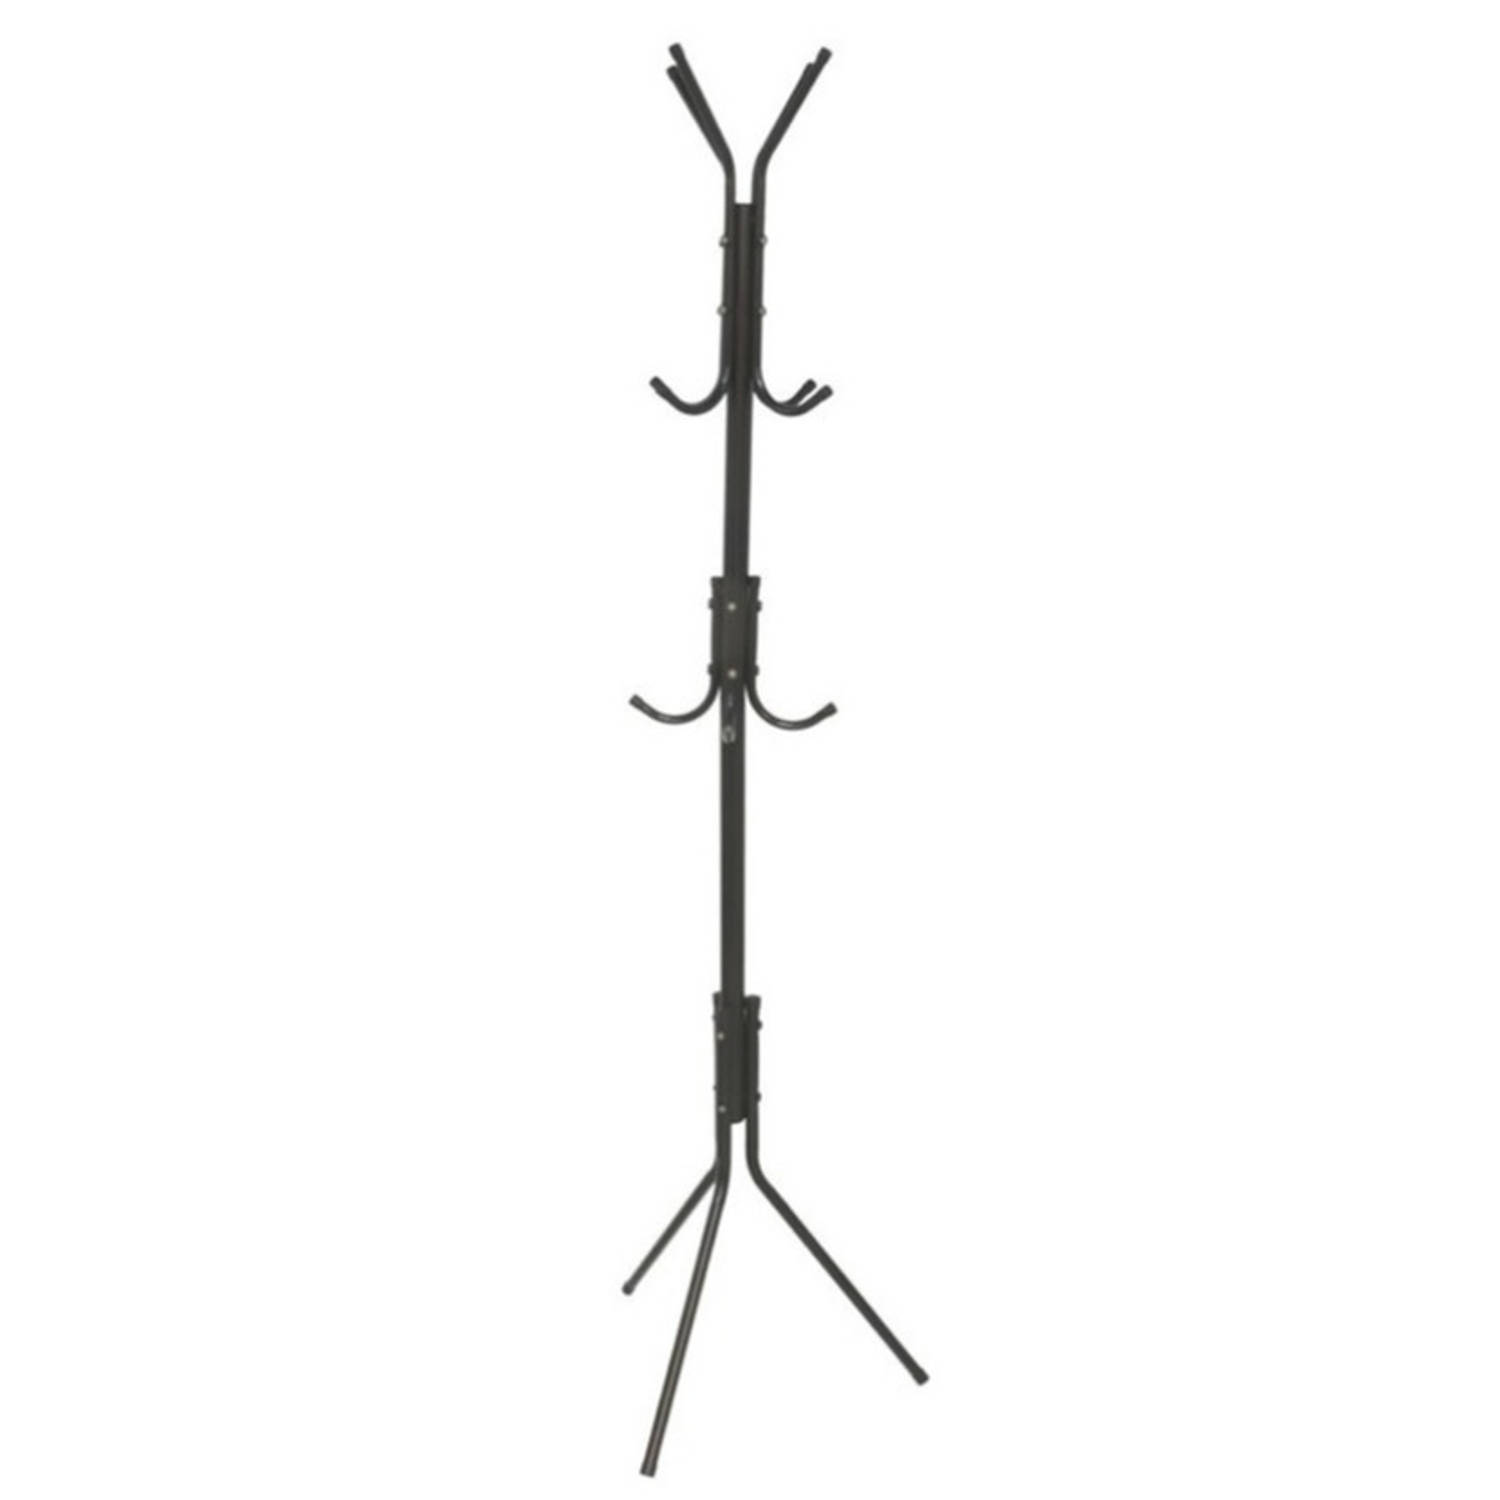 Gerimport - kapstok - zwart - metaal - staand - 12 haken op 3 hoogtes - 170 cm